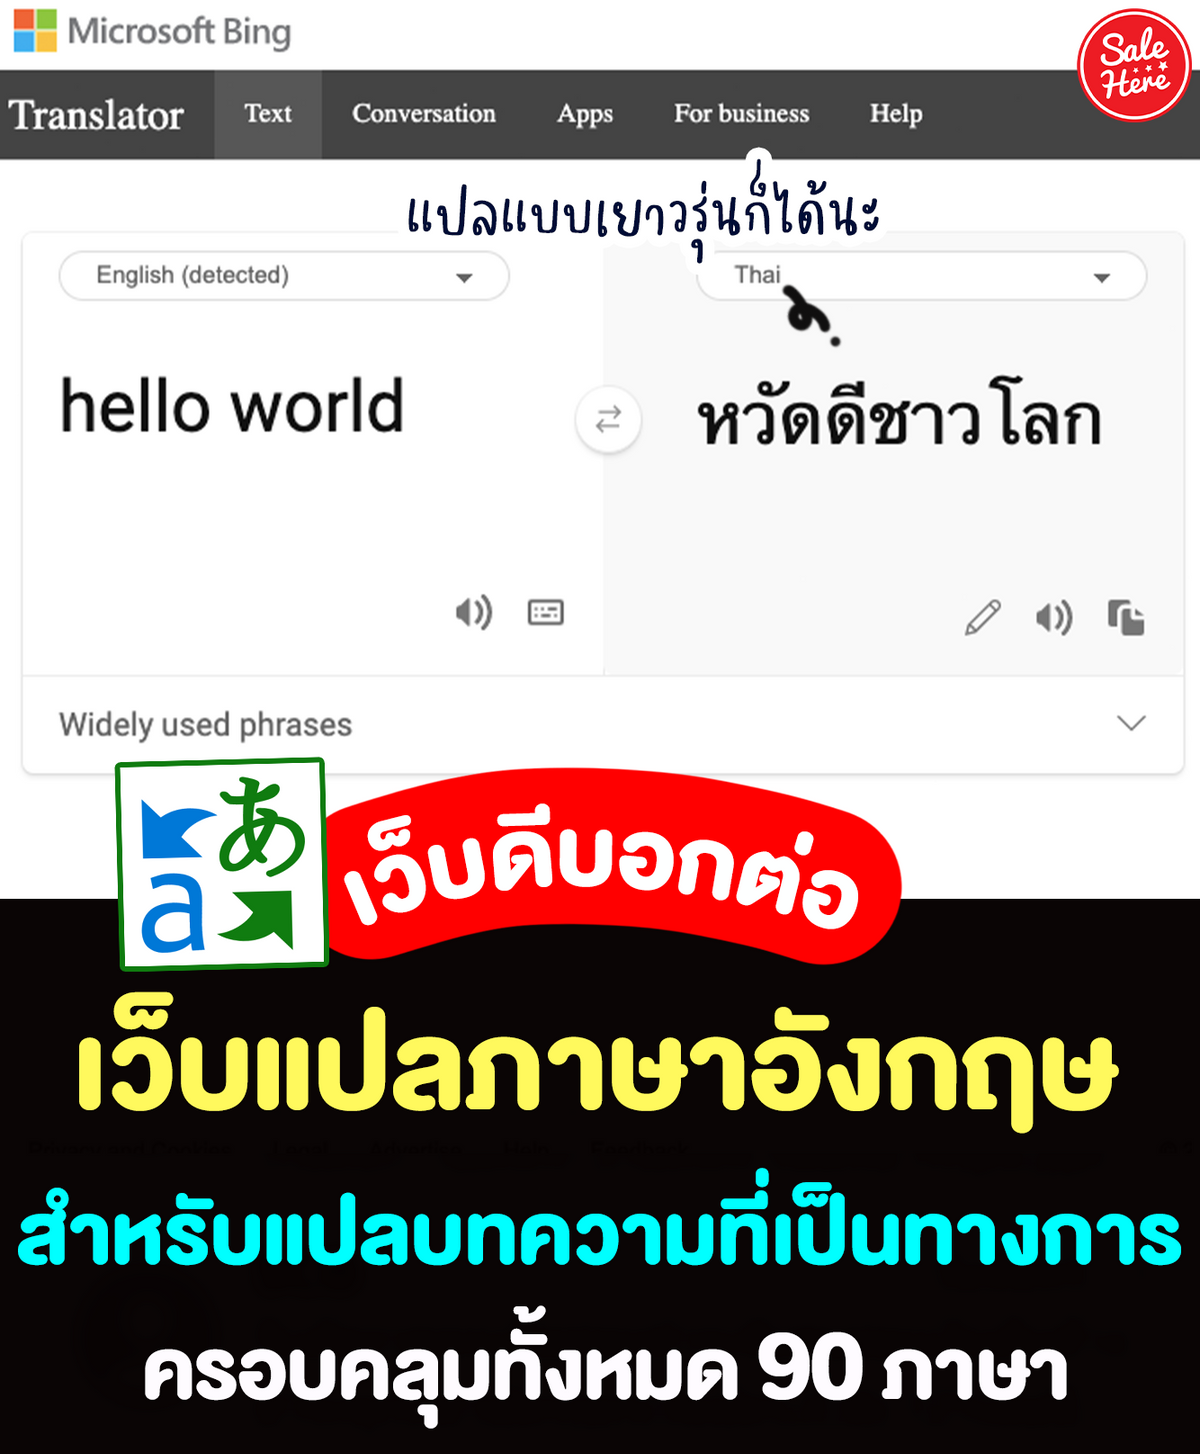 แปลภาษาไทยเป็นอังกิด: วิธีง่ายๆในการเรียนรู้การแปลภาษา - Hanoilaw Firm